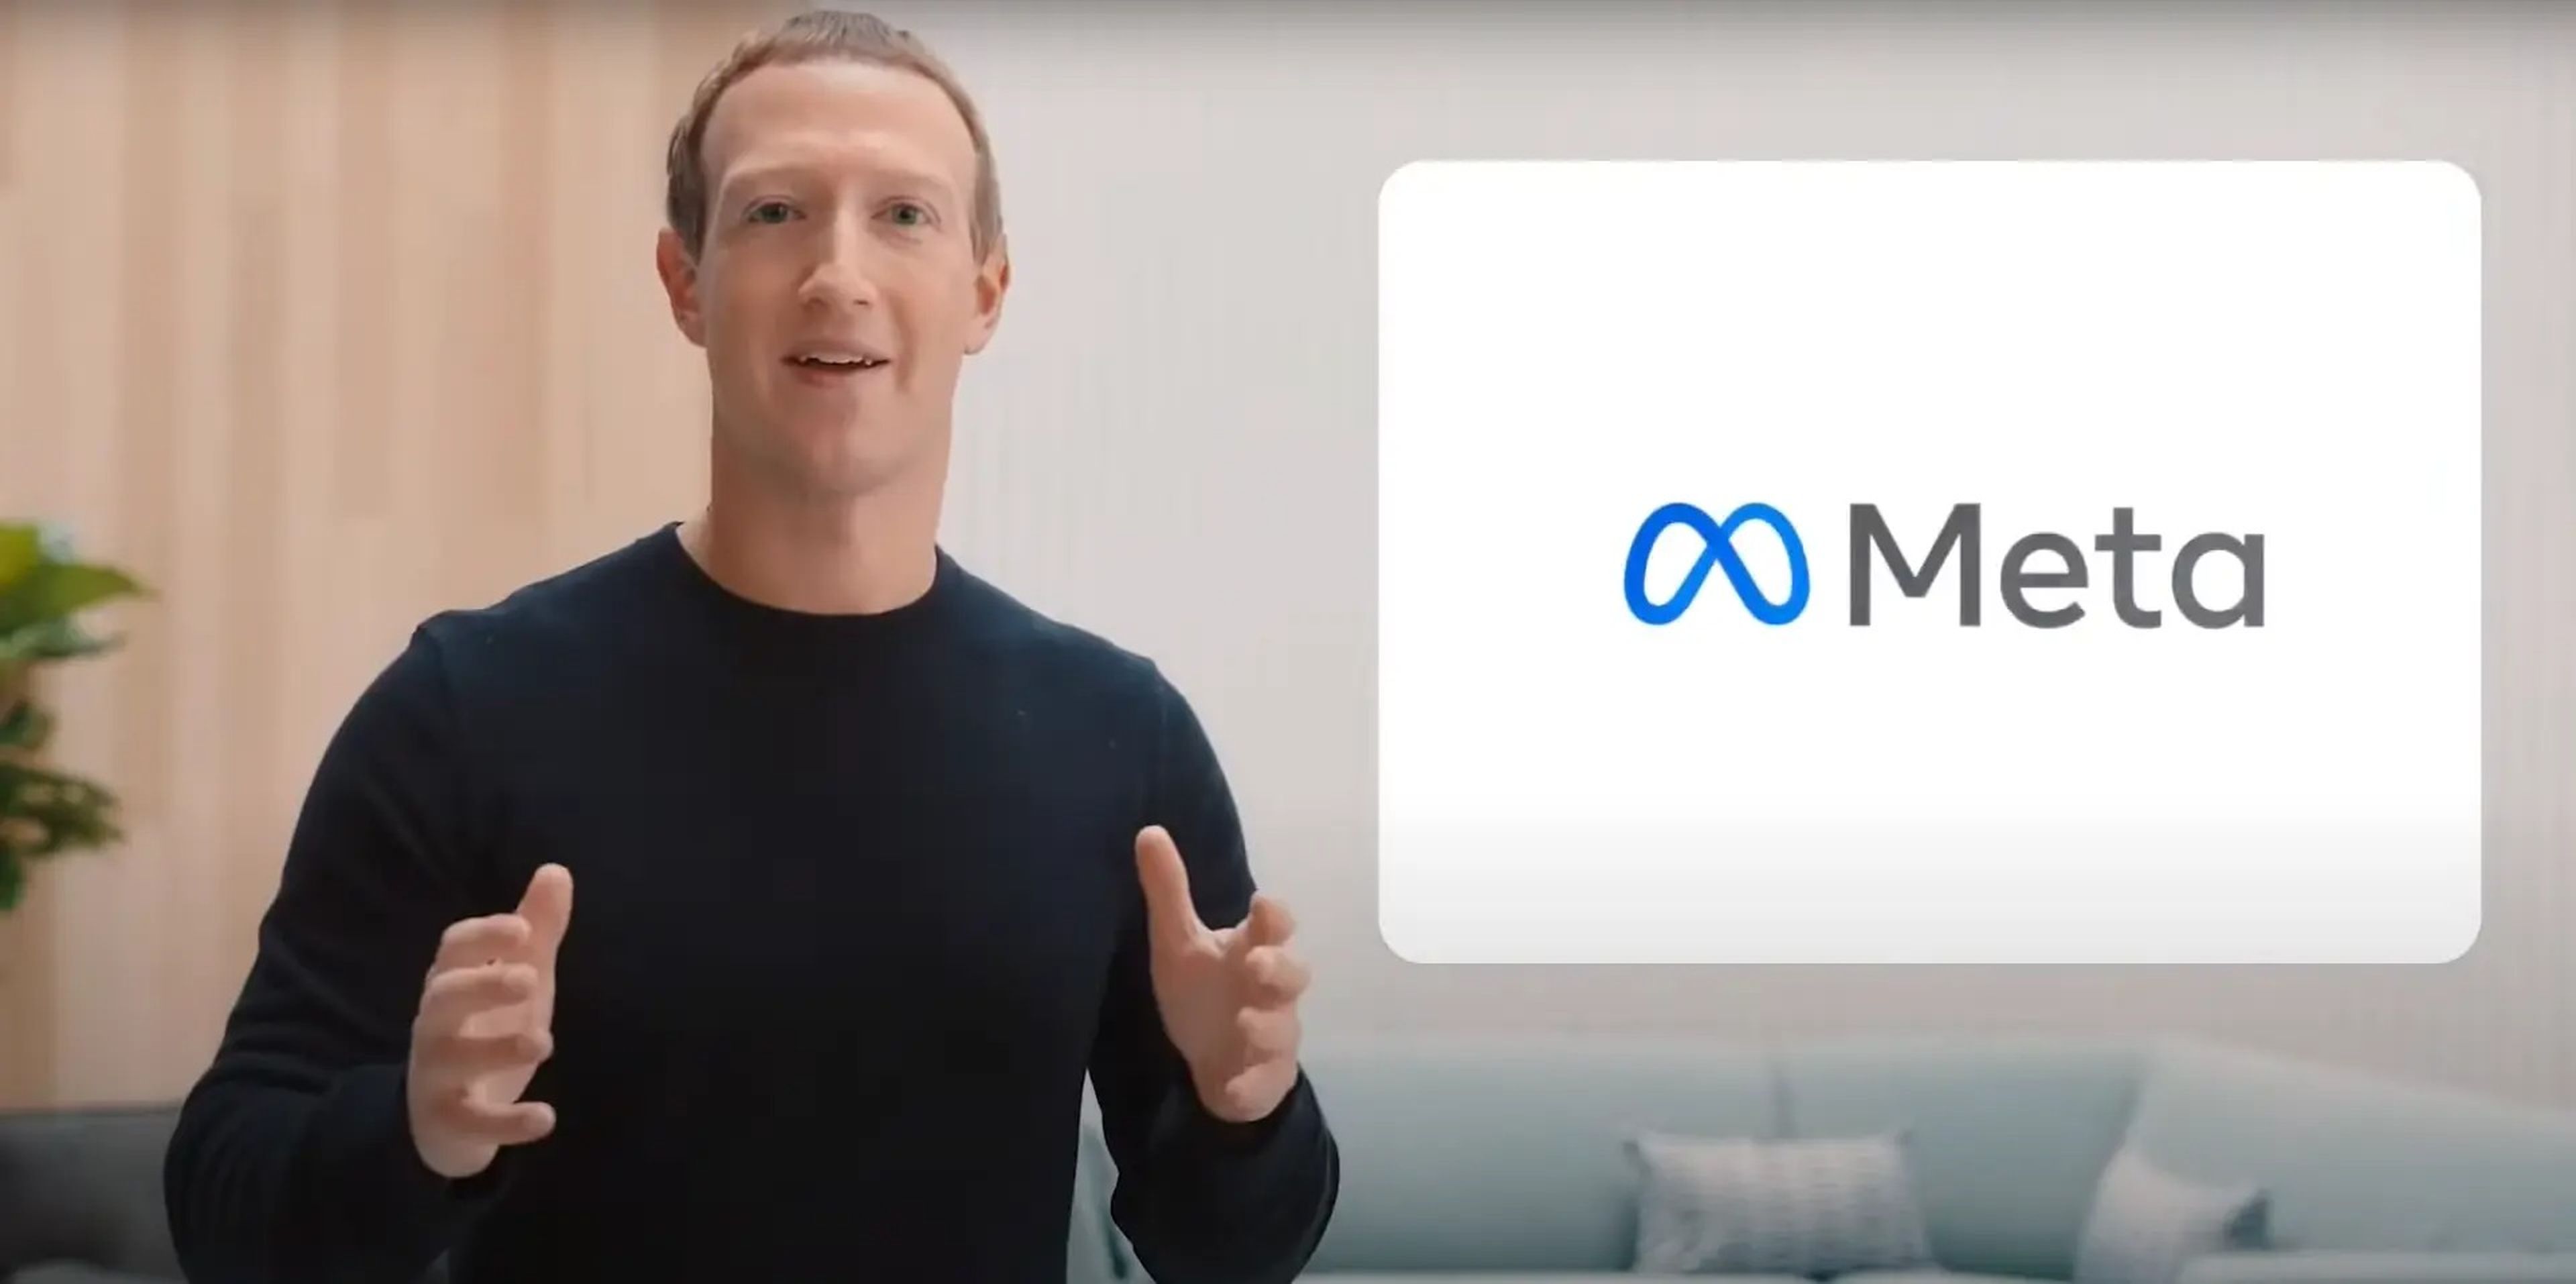 Facebook cofounder and CEO Mark Zuckerberg.Meta